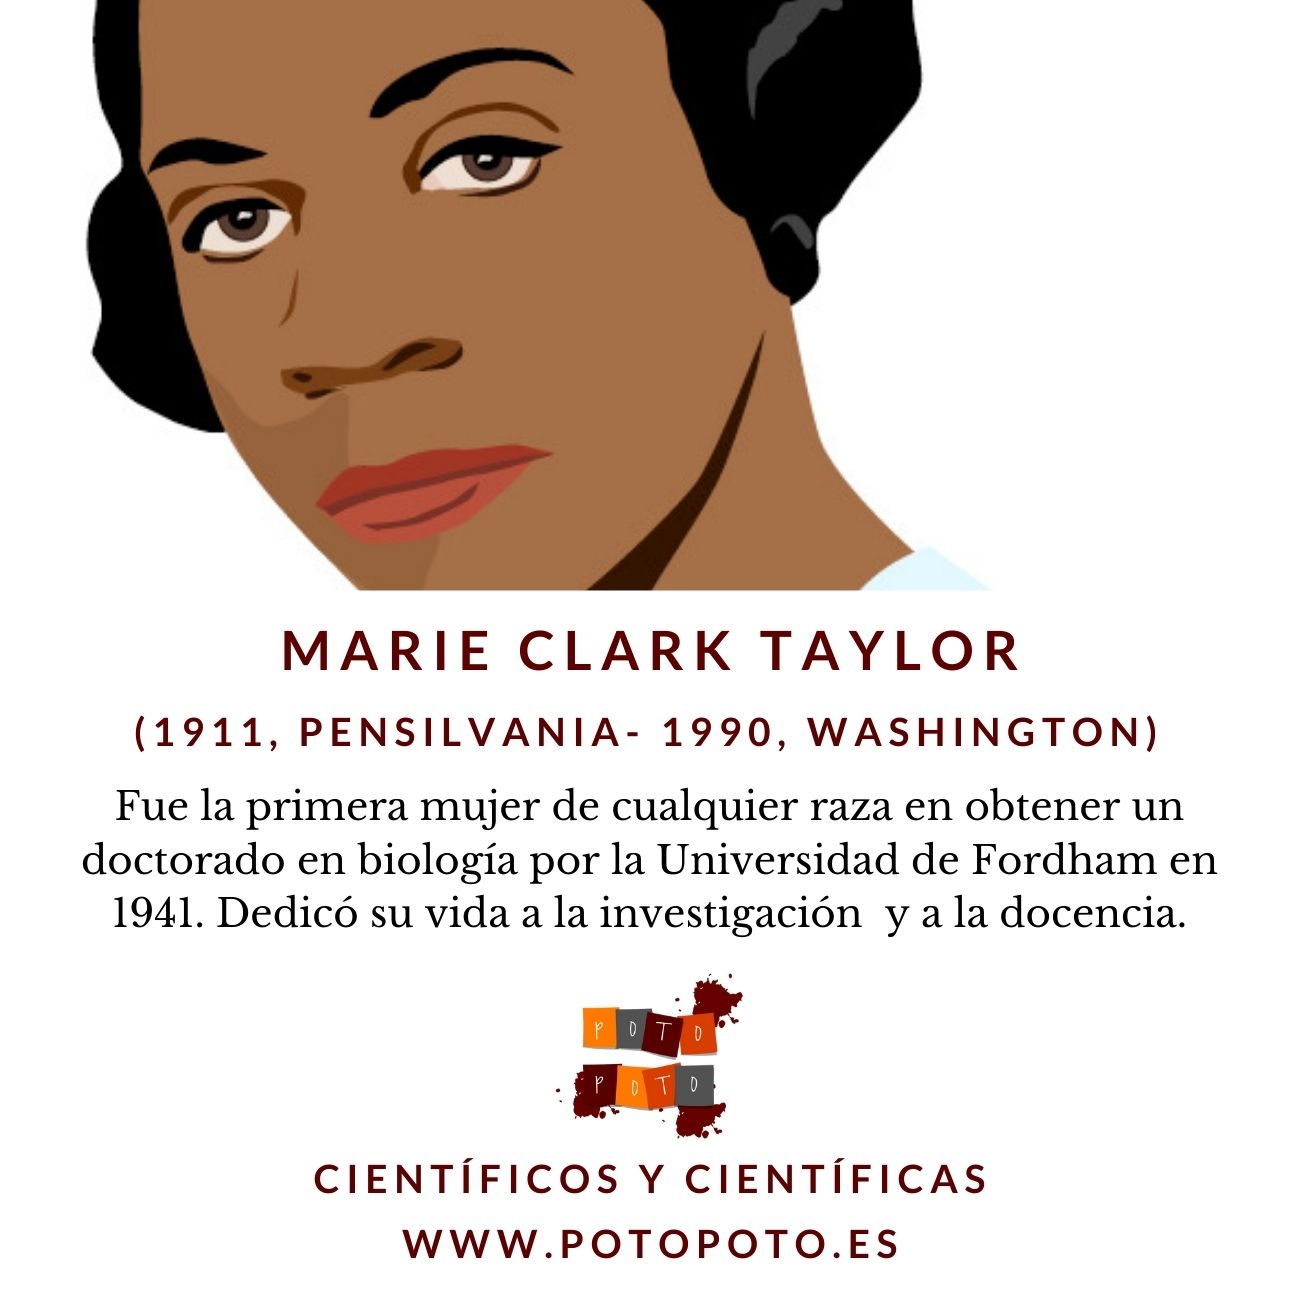 Marie Clark Taylor